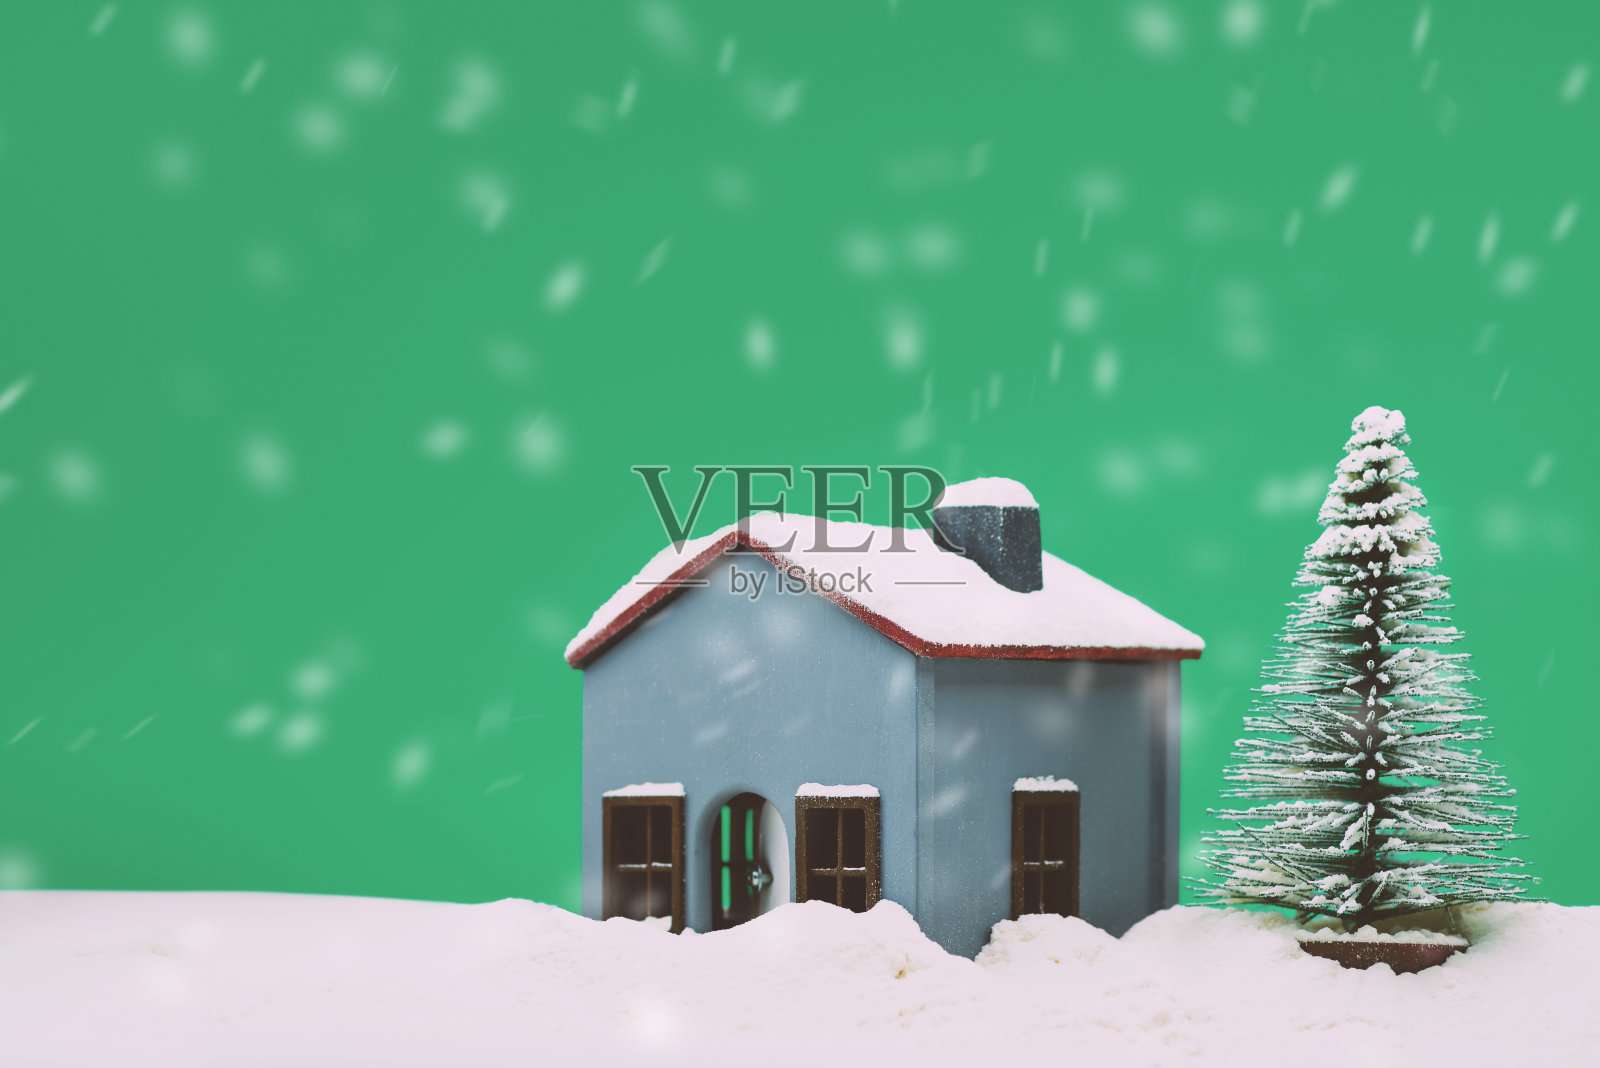 模型房子和一棵有雪的松树照片摄影图片